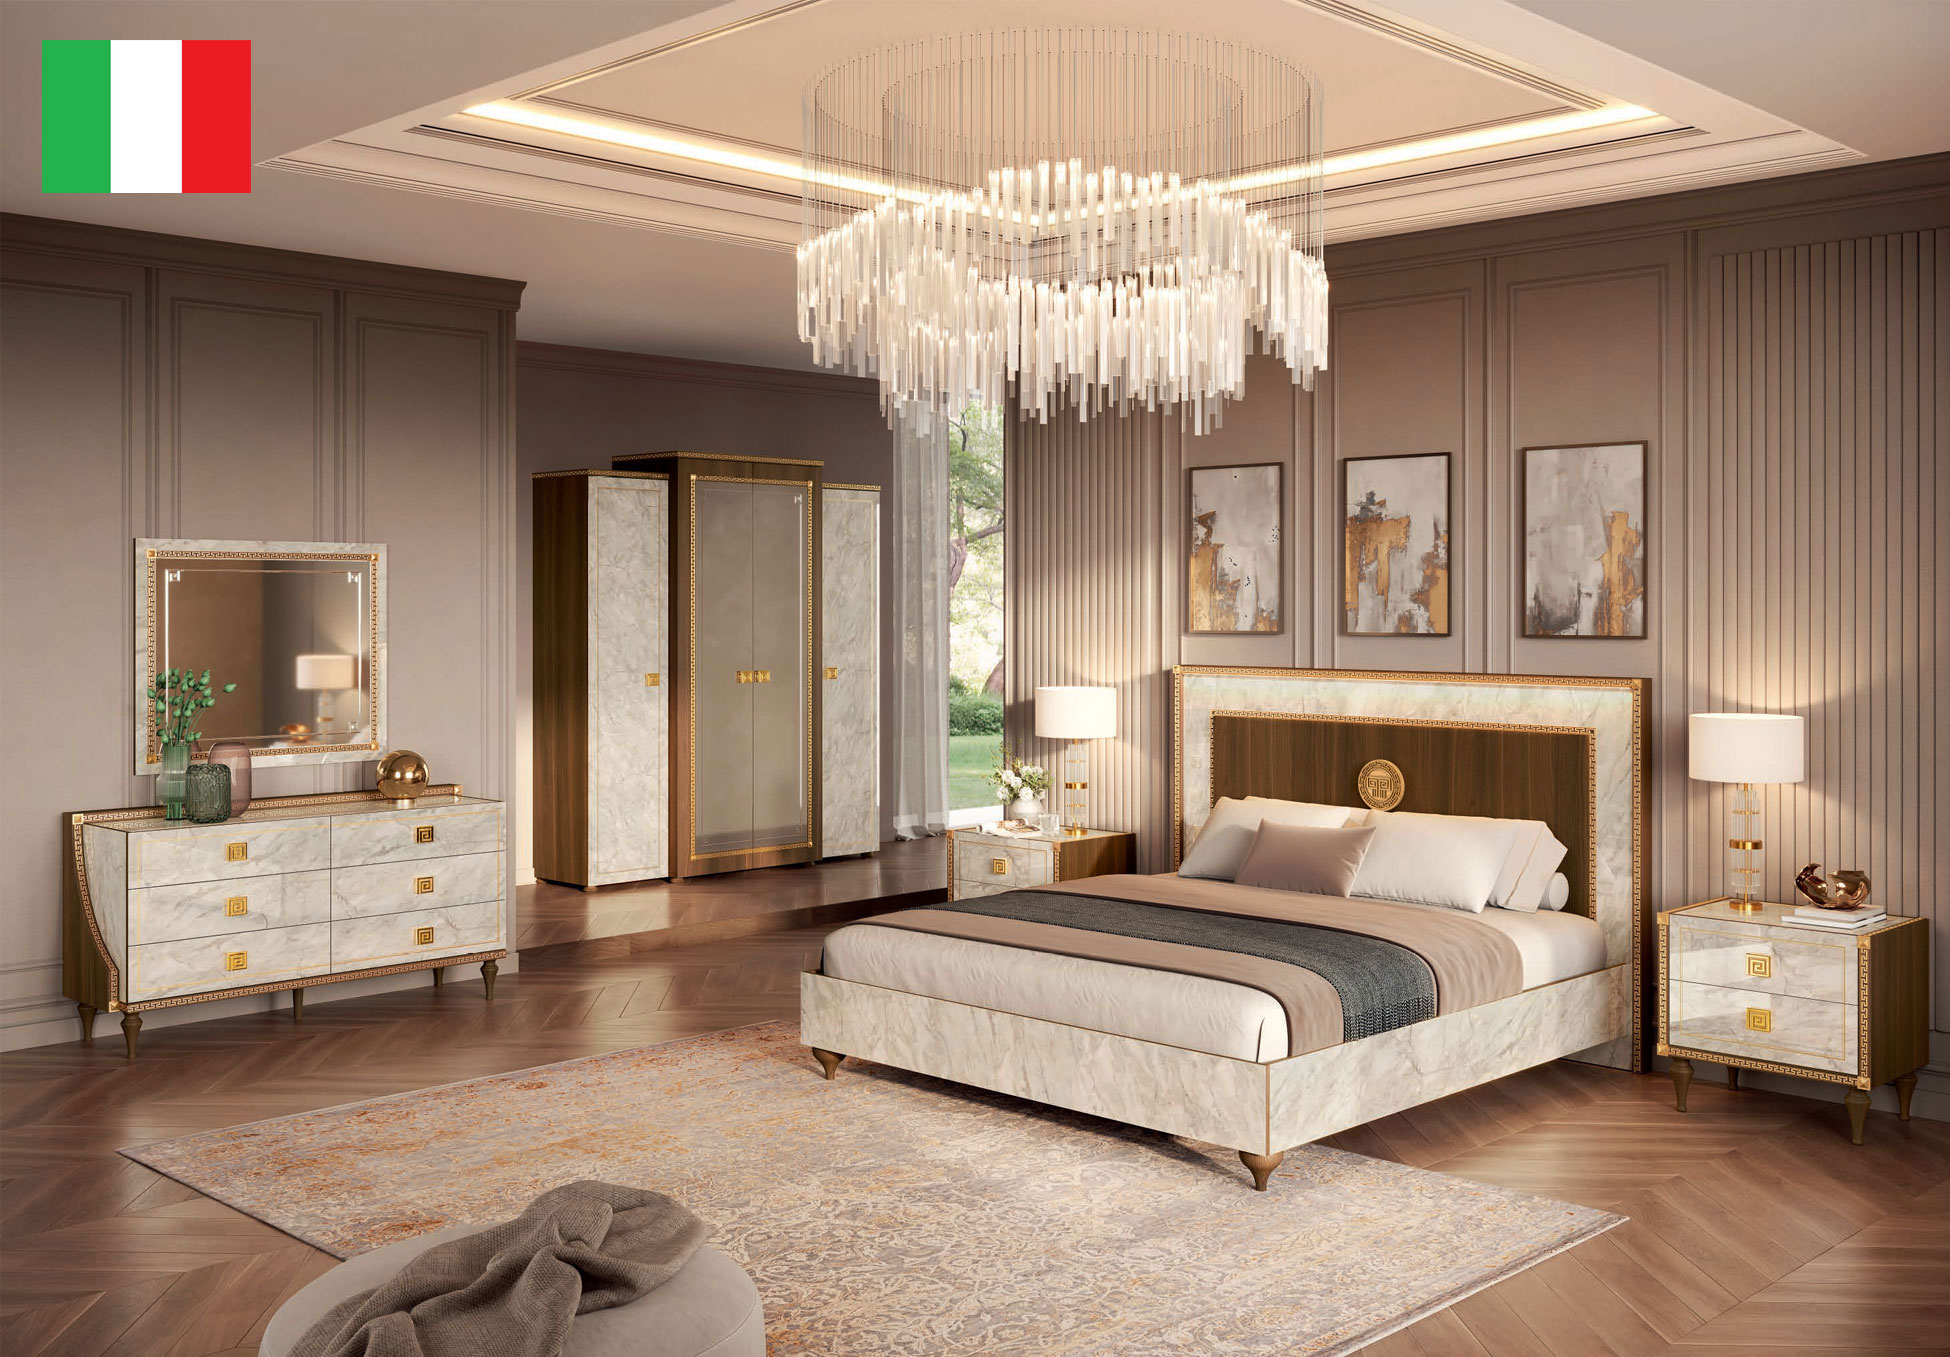 Bedroom Furniture Beds Romantica Bedroom